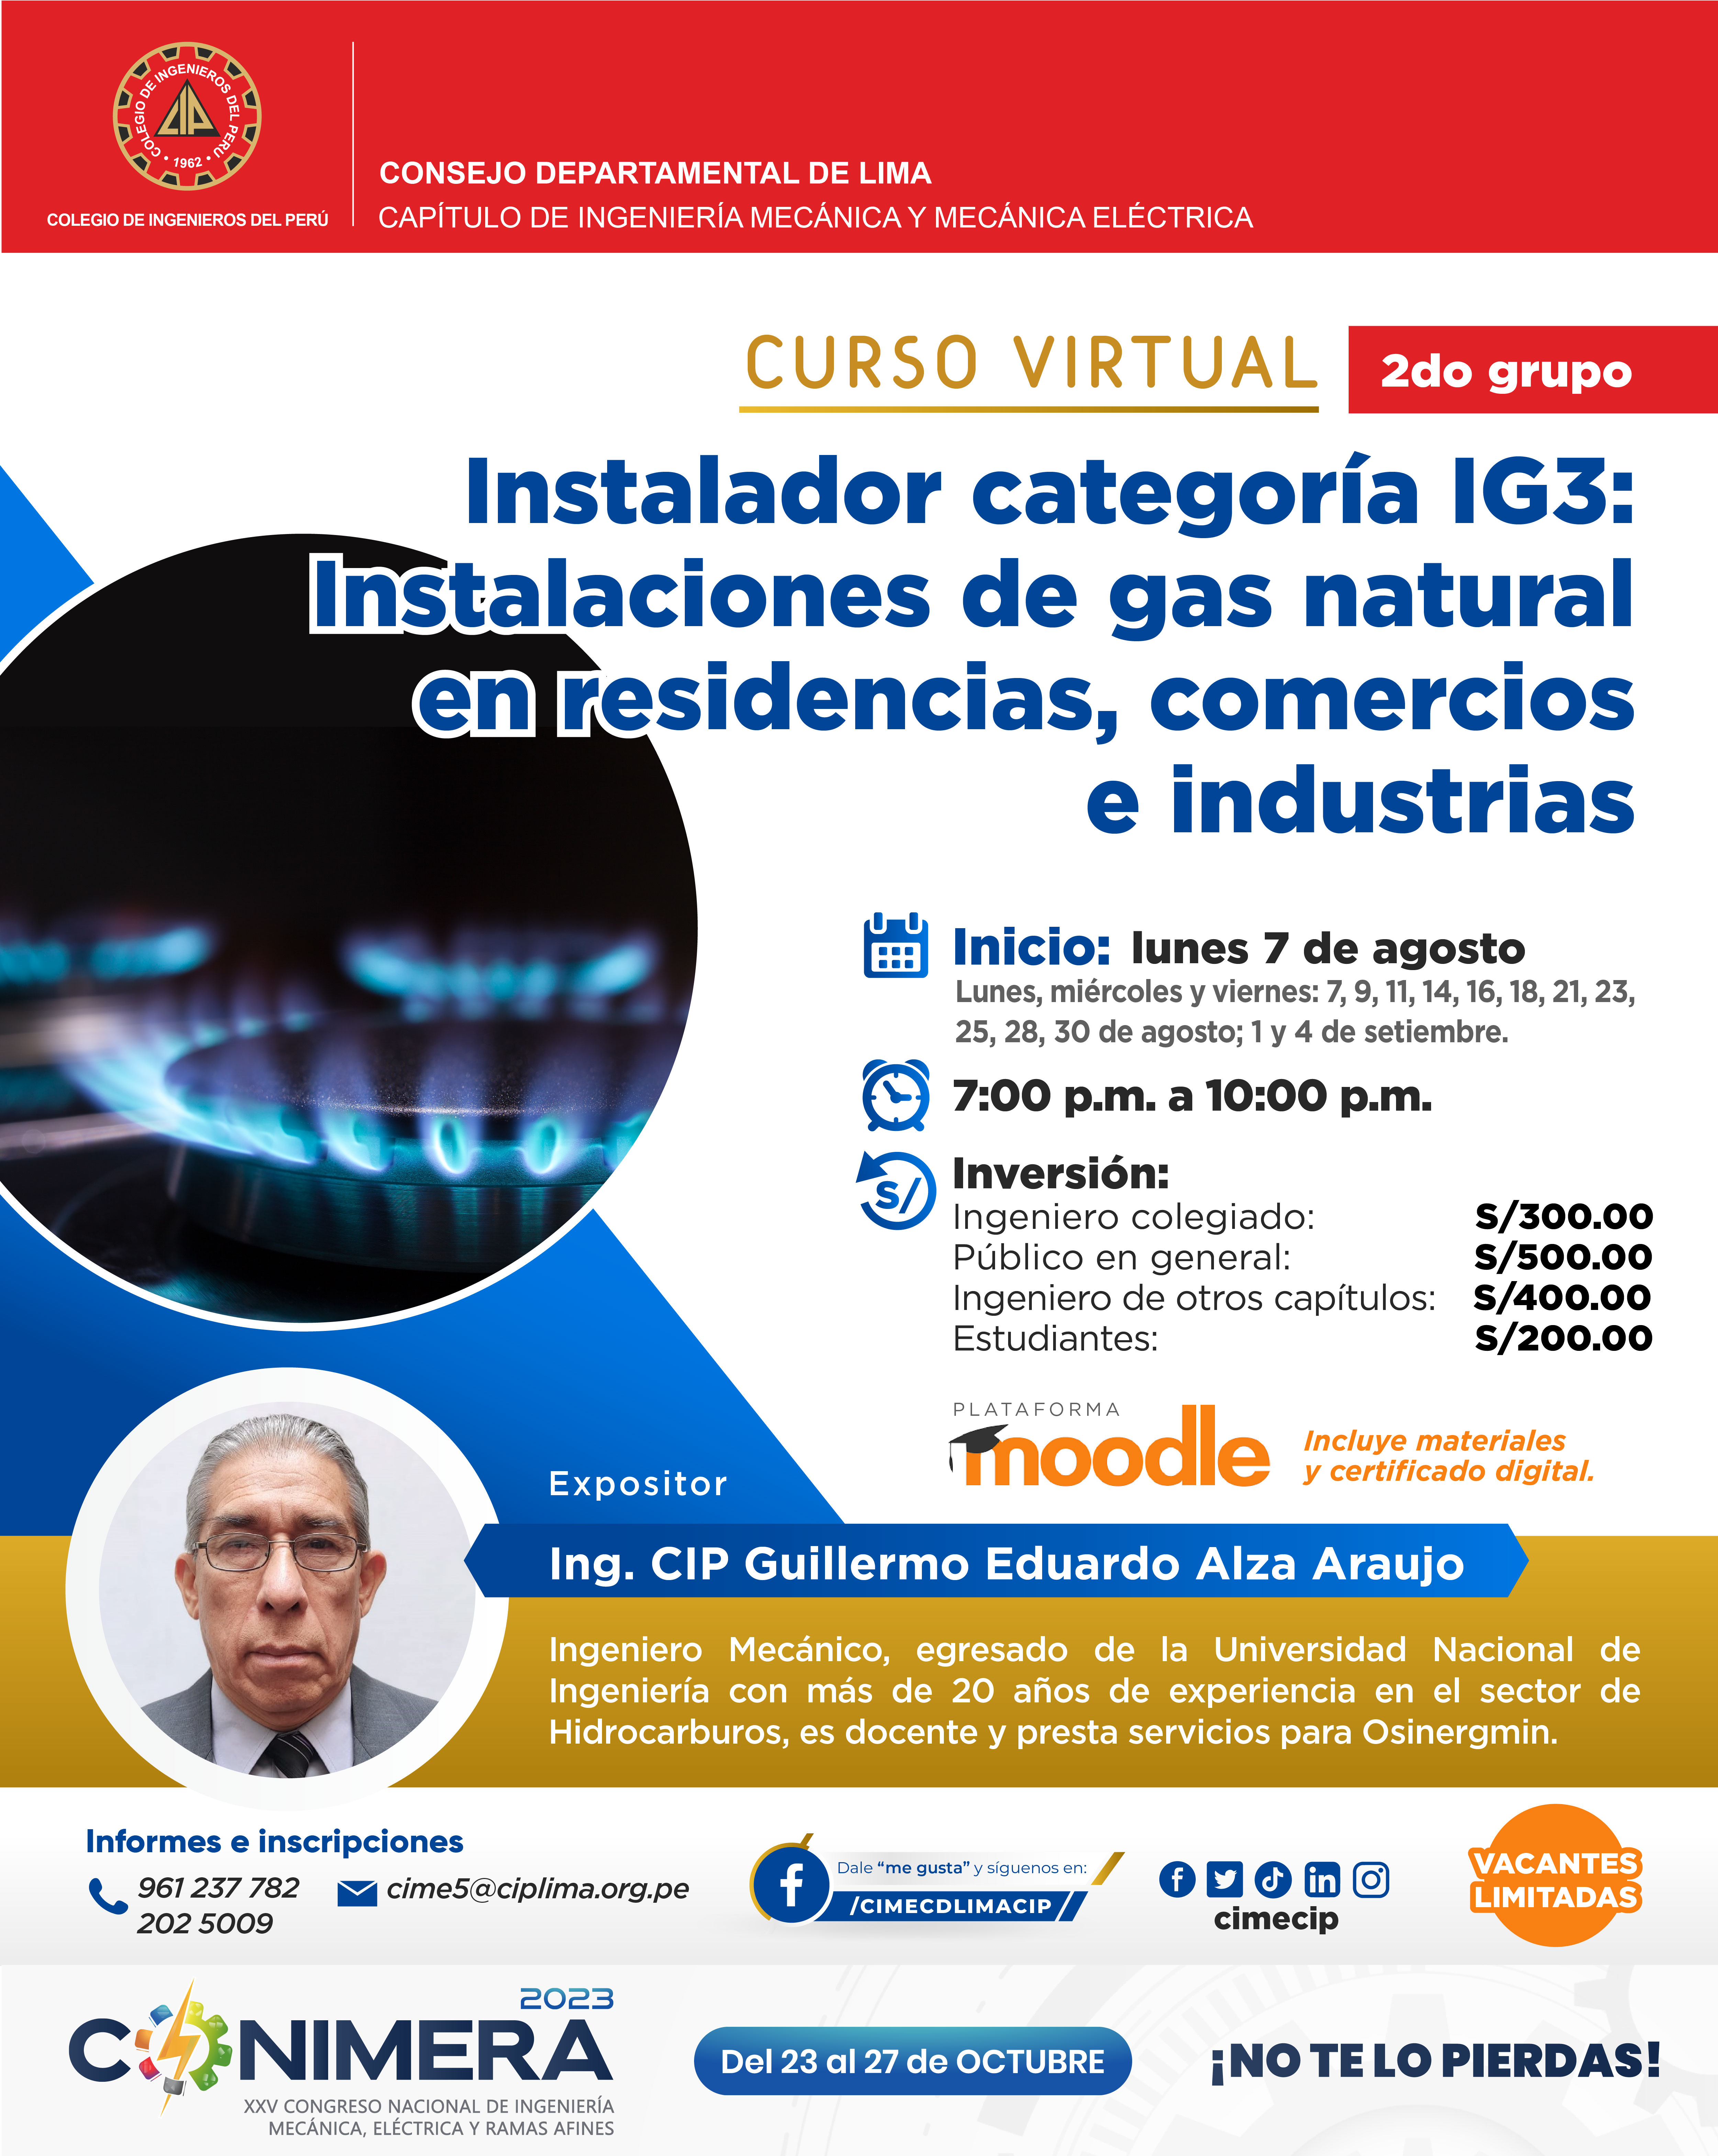 Instalador categoría IG3: Instalaciones de gas natural en residencias, comercios e industrias.